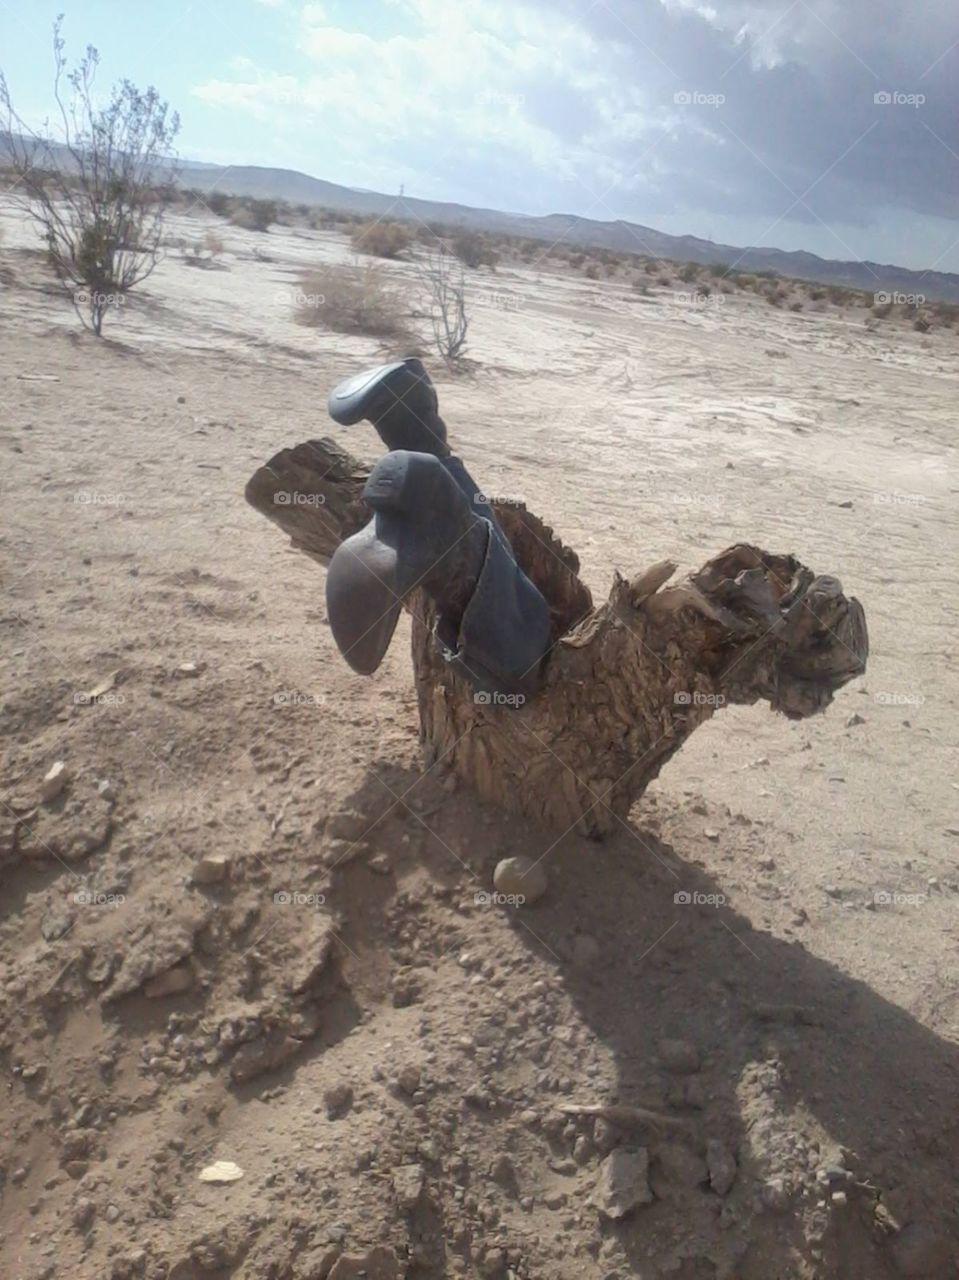 boots. weird photo in the desert 